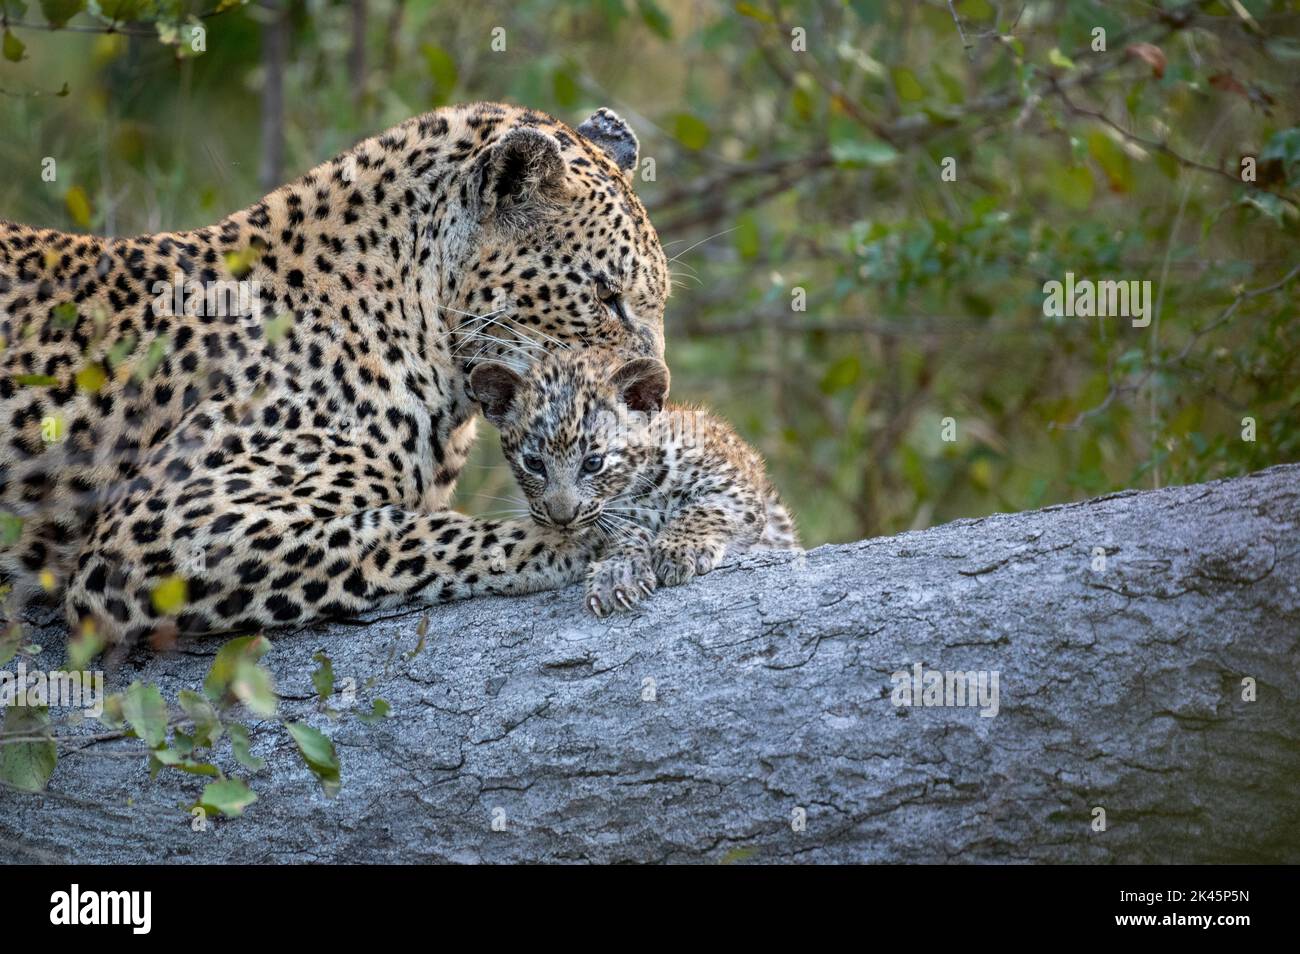 Ein Leopard und ihr Junge, Panthera pardus, legen sich zusammen auf einen Baumstamm, während der Leopard ihr Junges reinigt Stockfoto